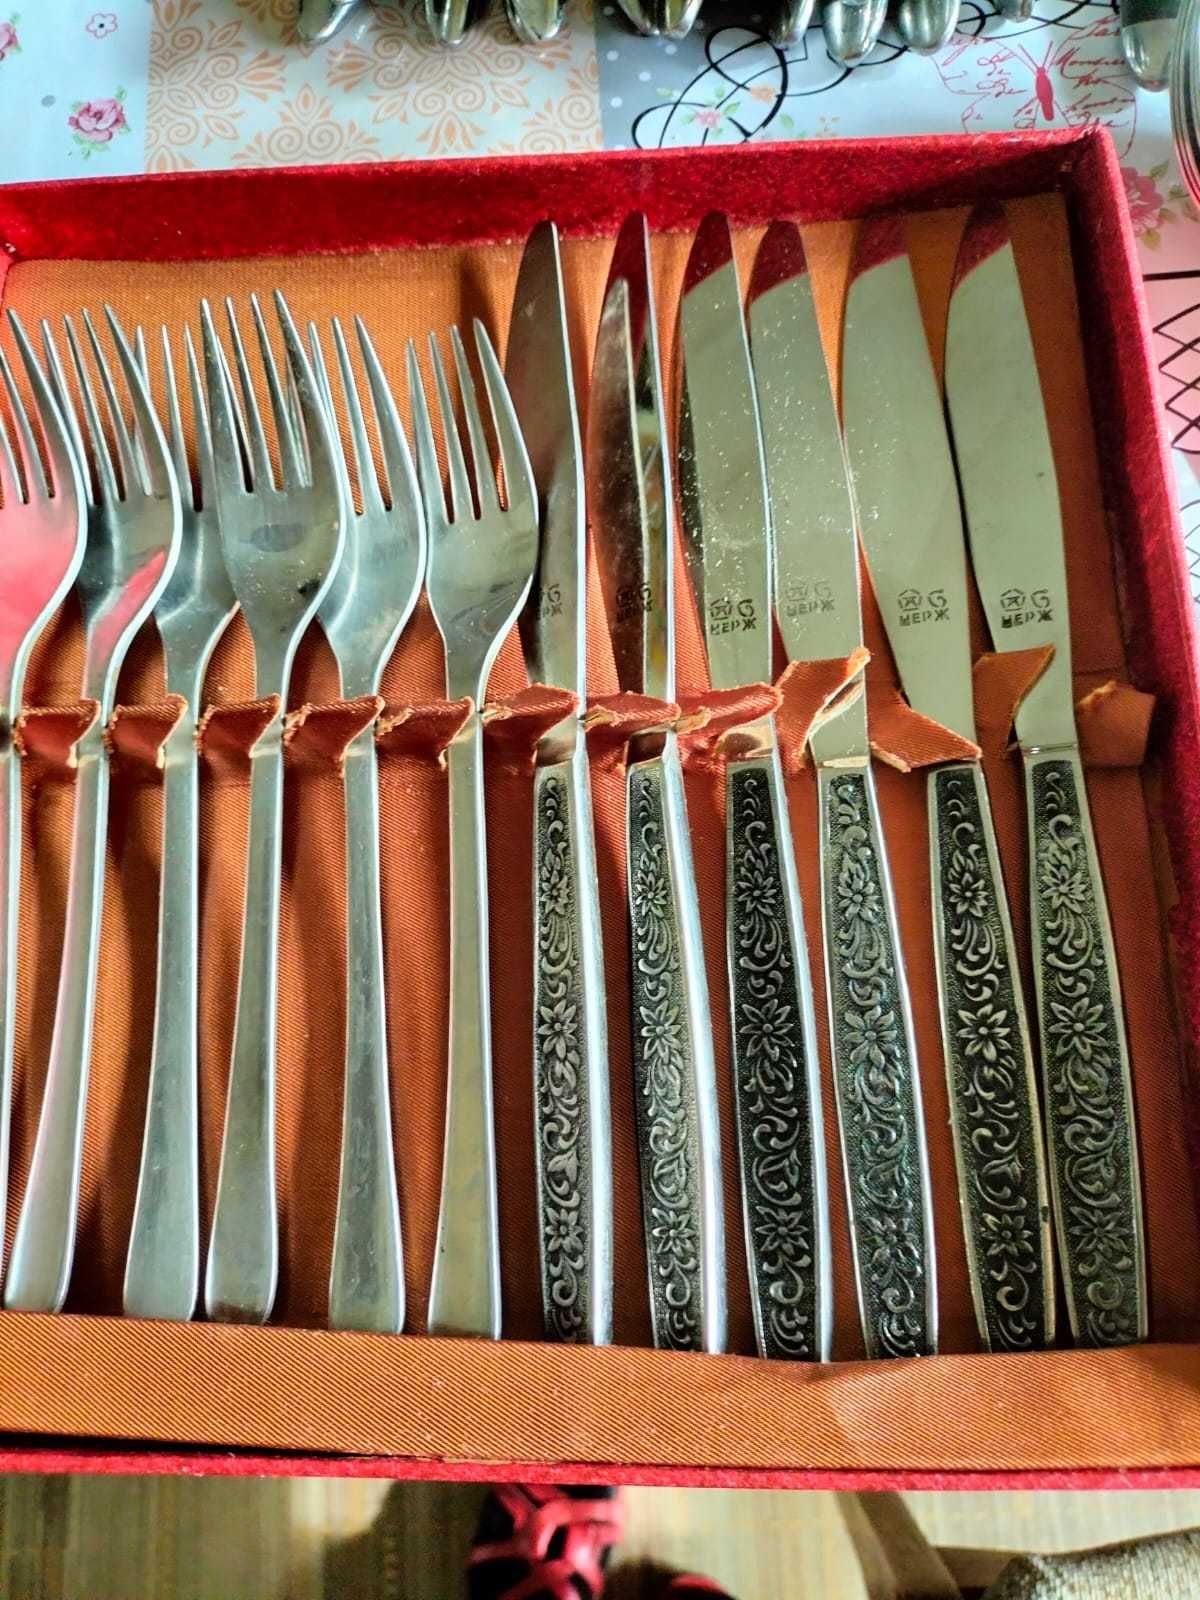 Продам б/у посуду - вилки, ножи, стекло